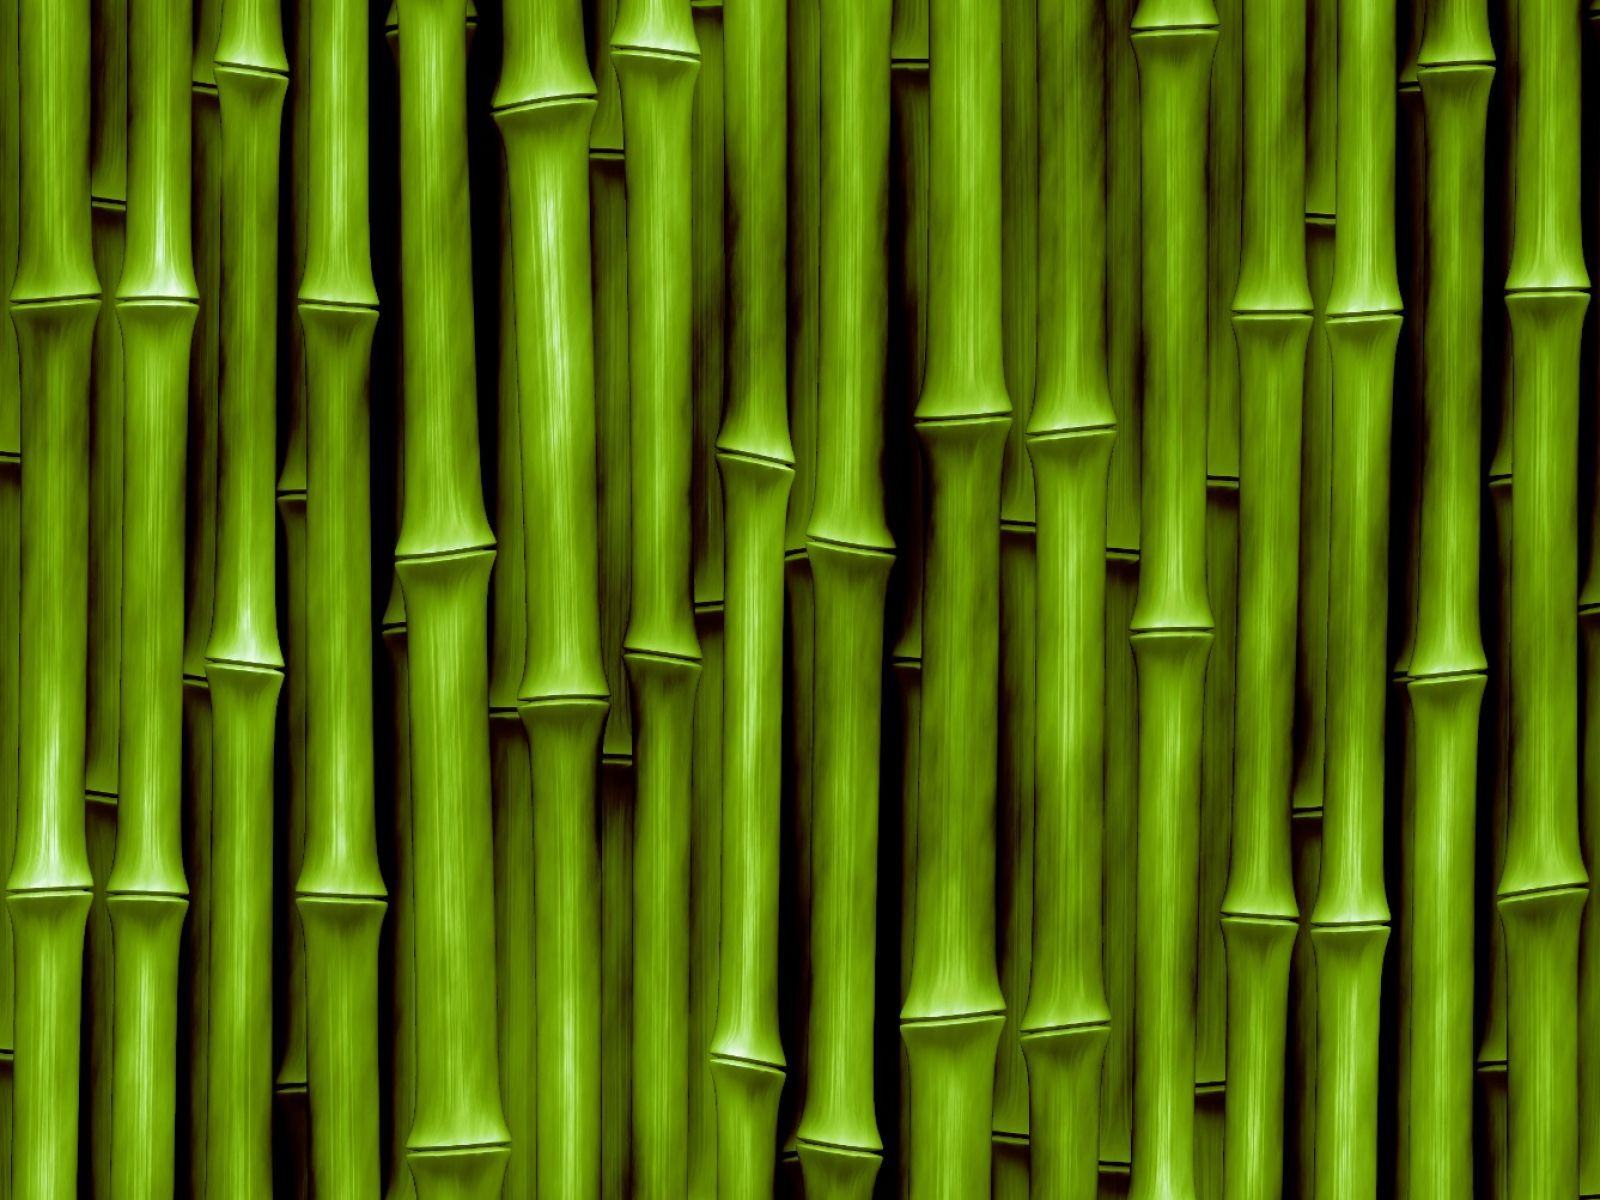 Chinese Bamboo Garden - Green Bamboo Texture , HD Wallpaper & Backgrounds